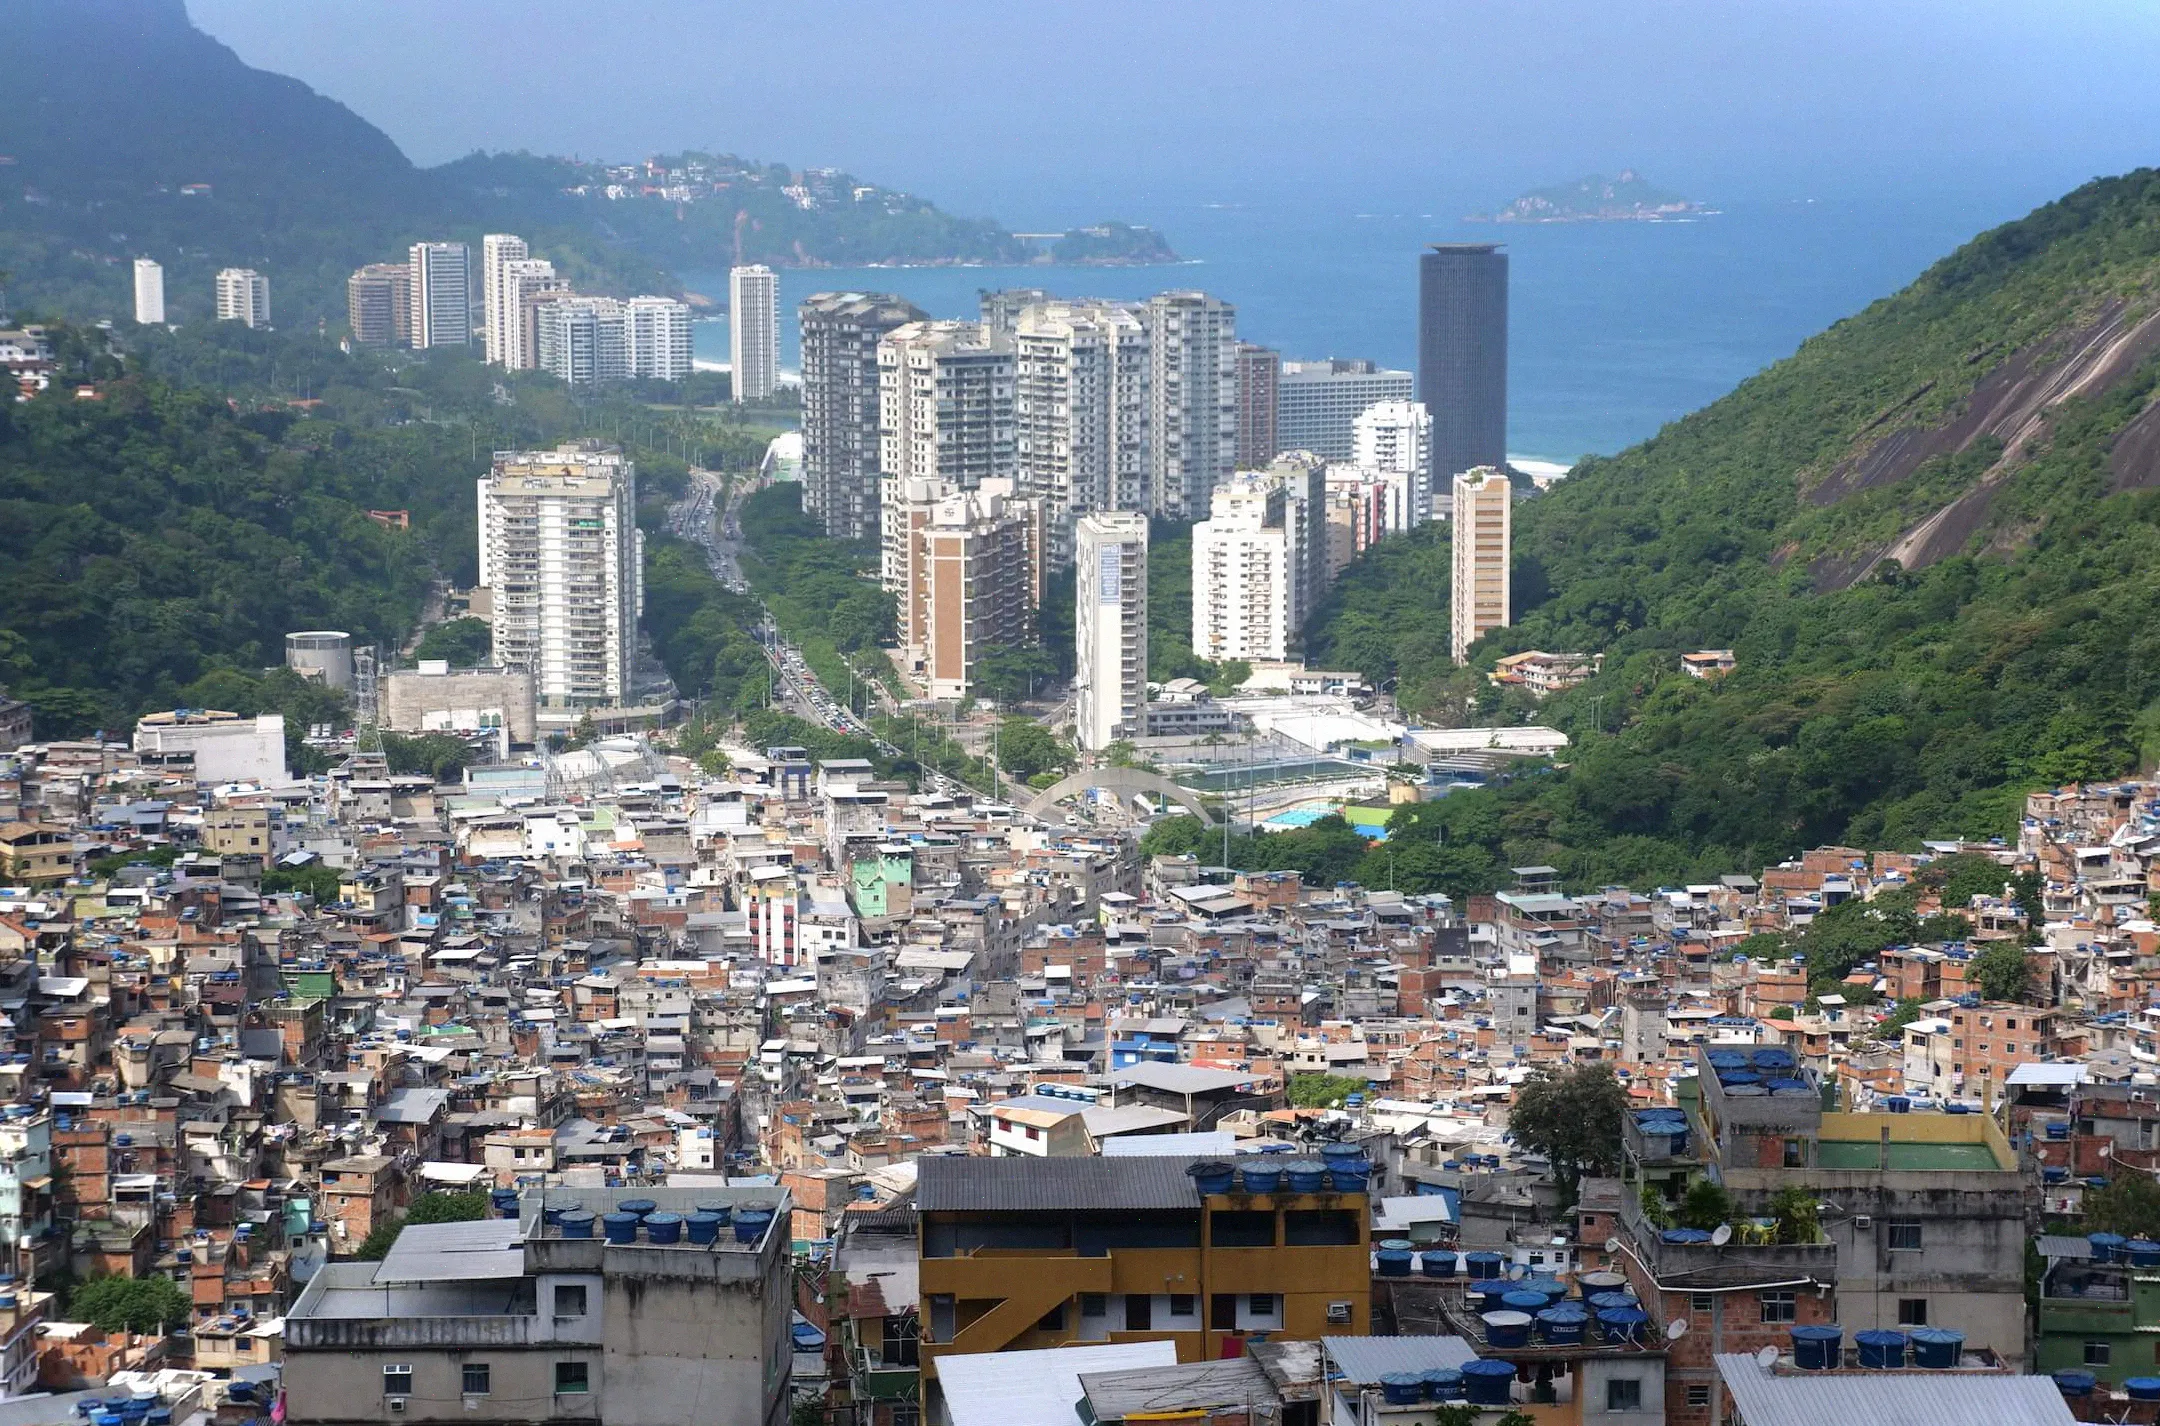 Impresionante vista desde la Puerta del Cielo a Rocinha Favela en Río